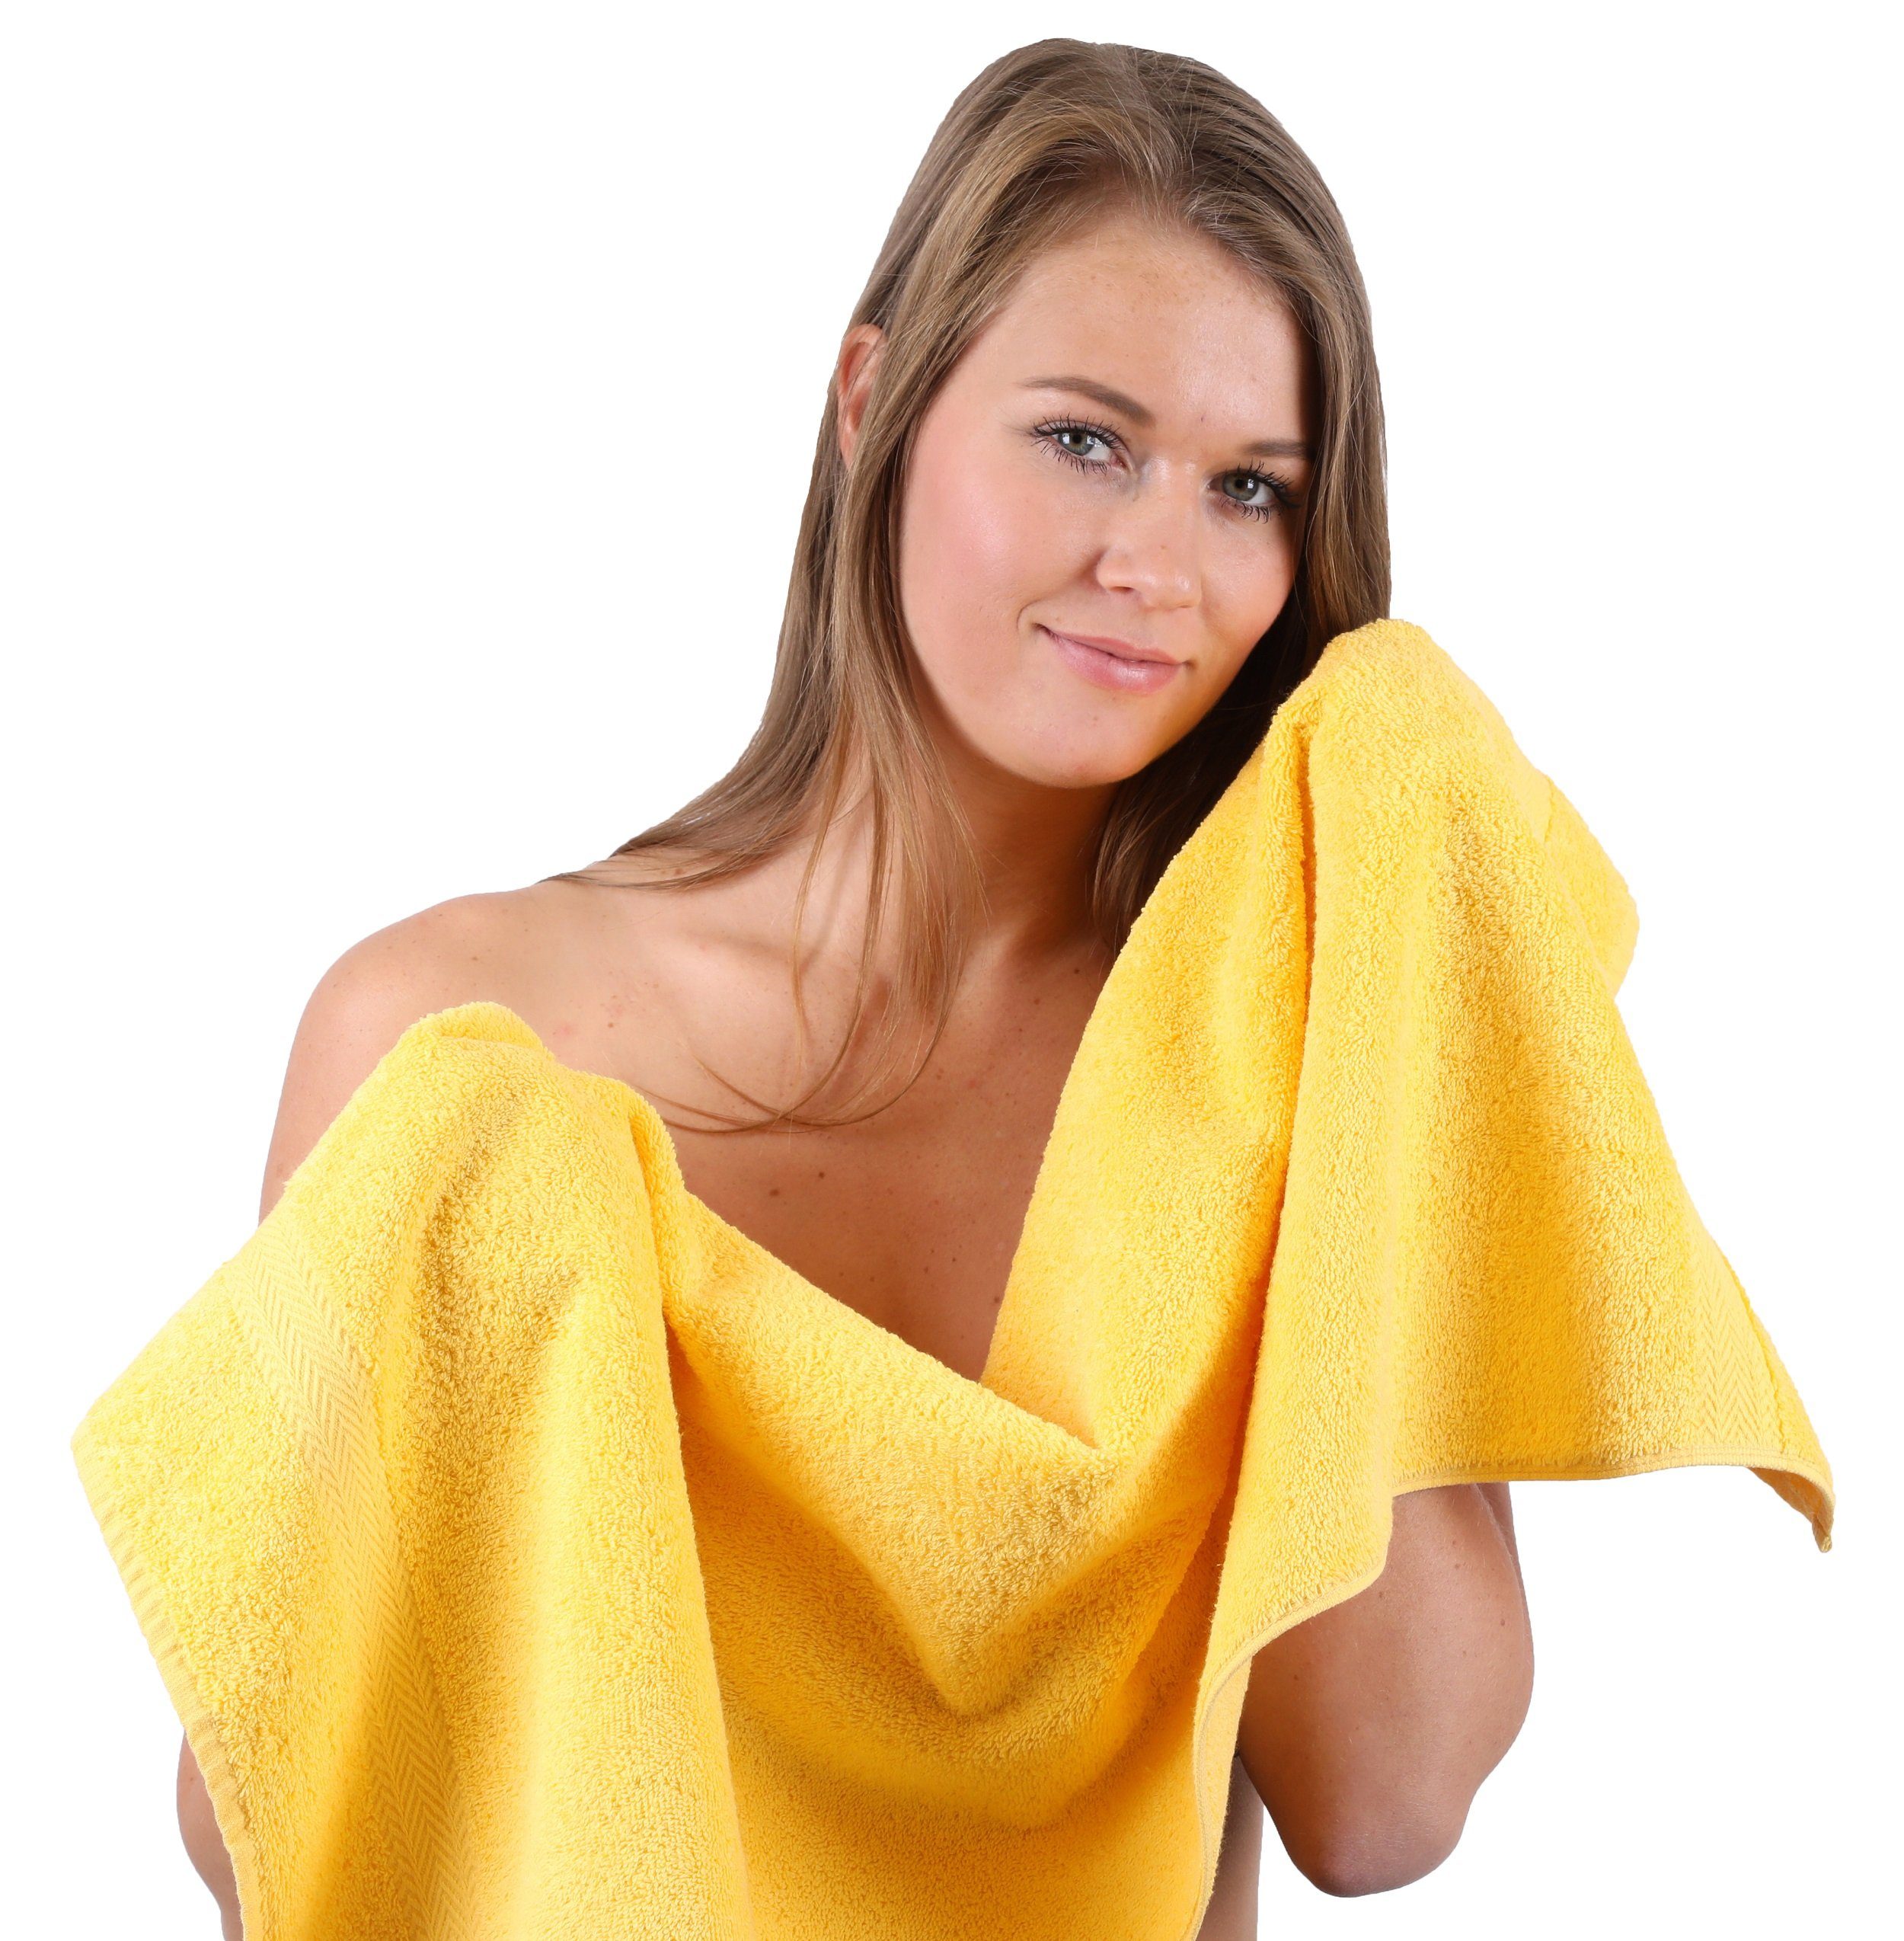 Betz Handtuch gelb und dunkelrot, 10-TLG. Handtuch-Set Baumwolle 100% Set Farbe